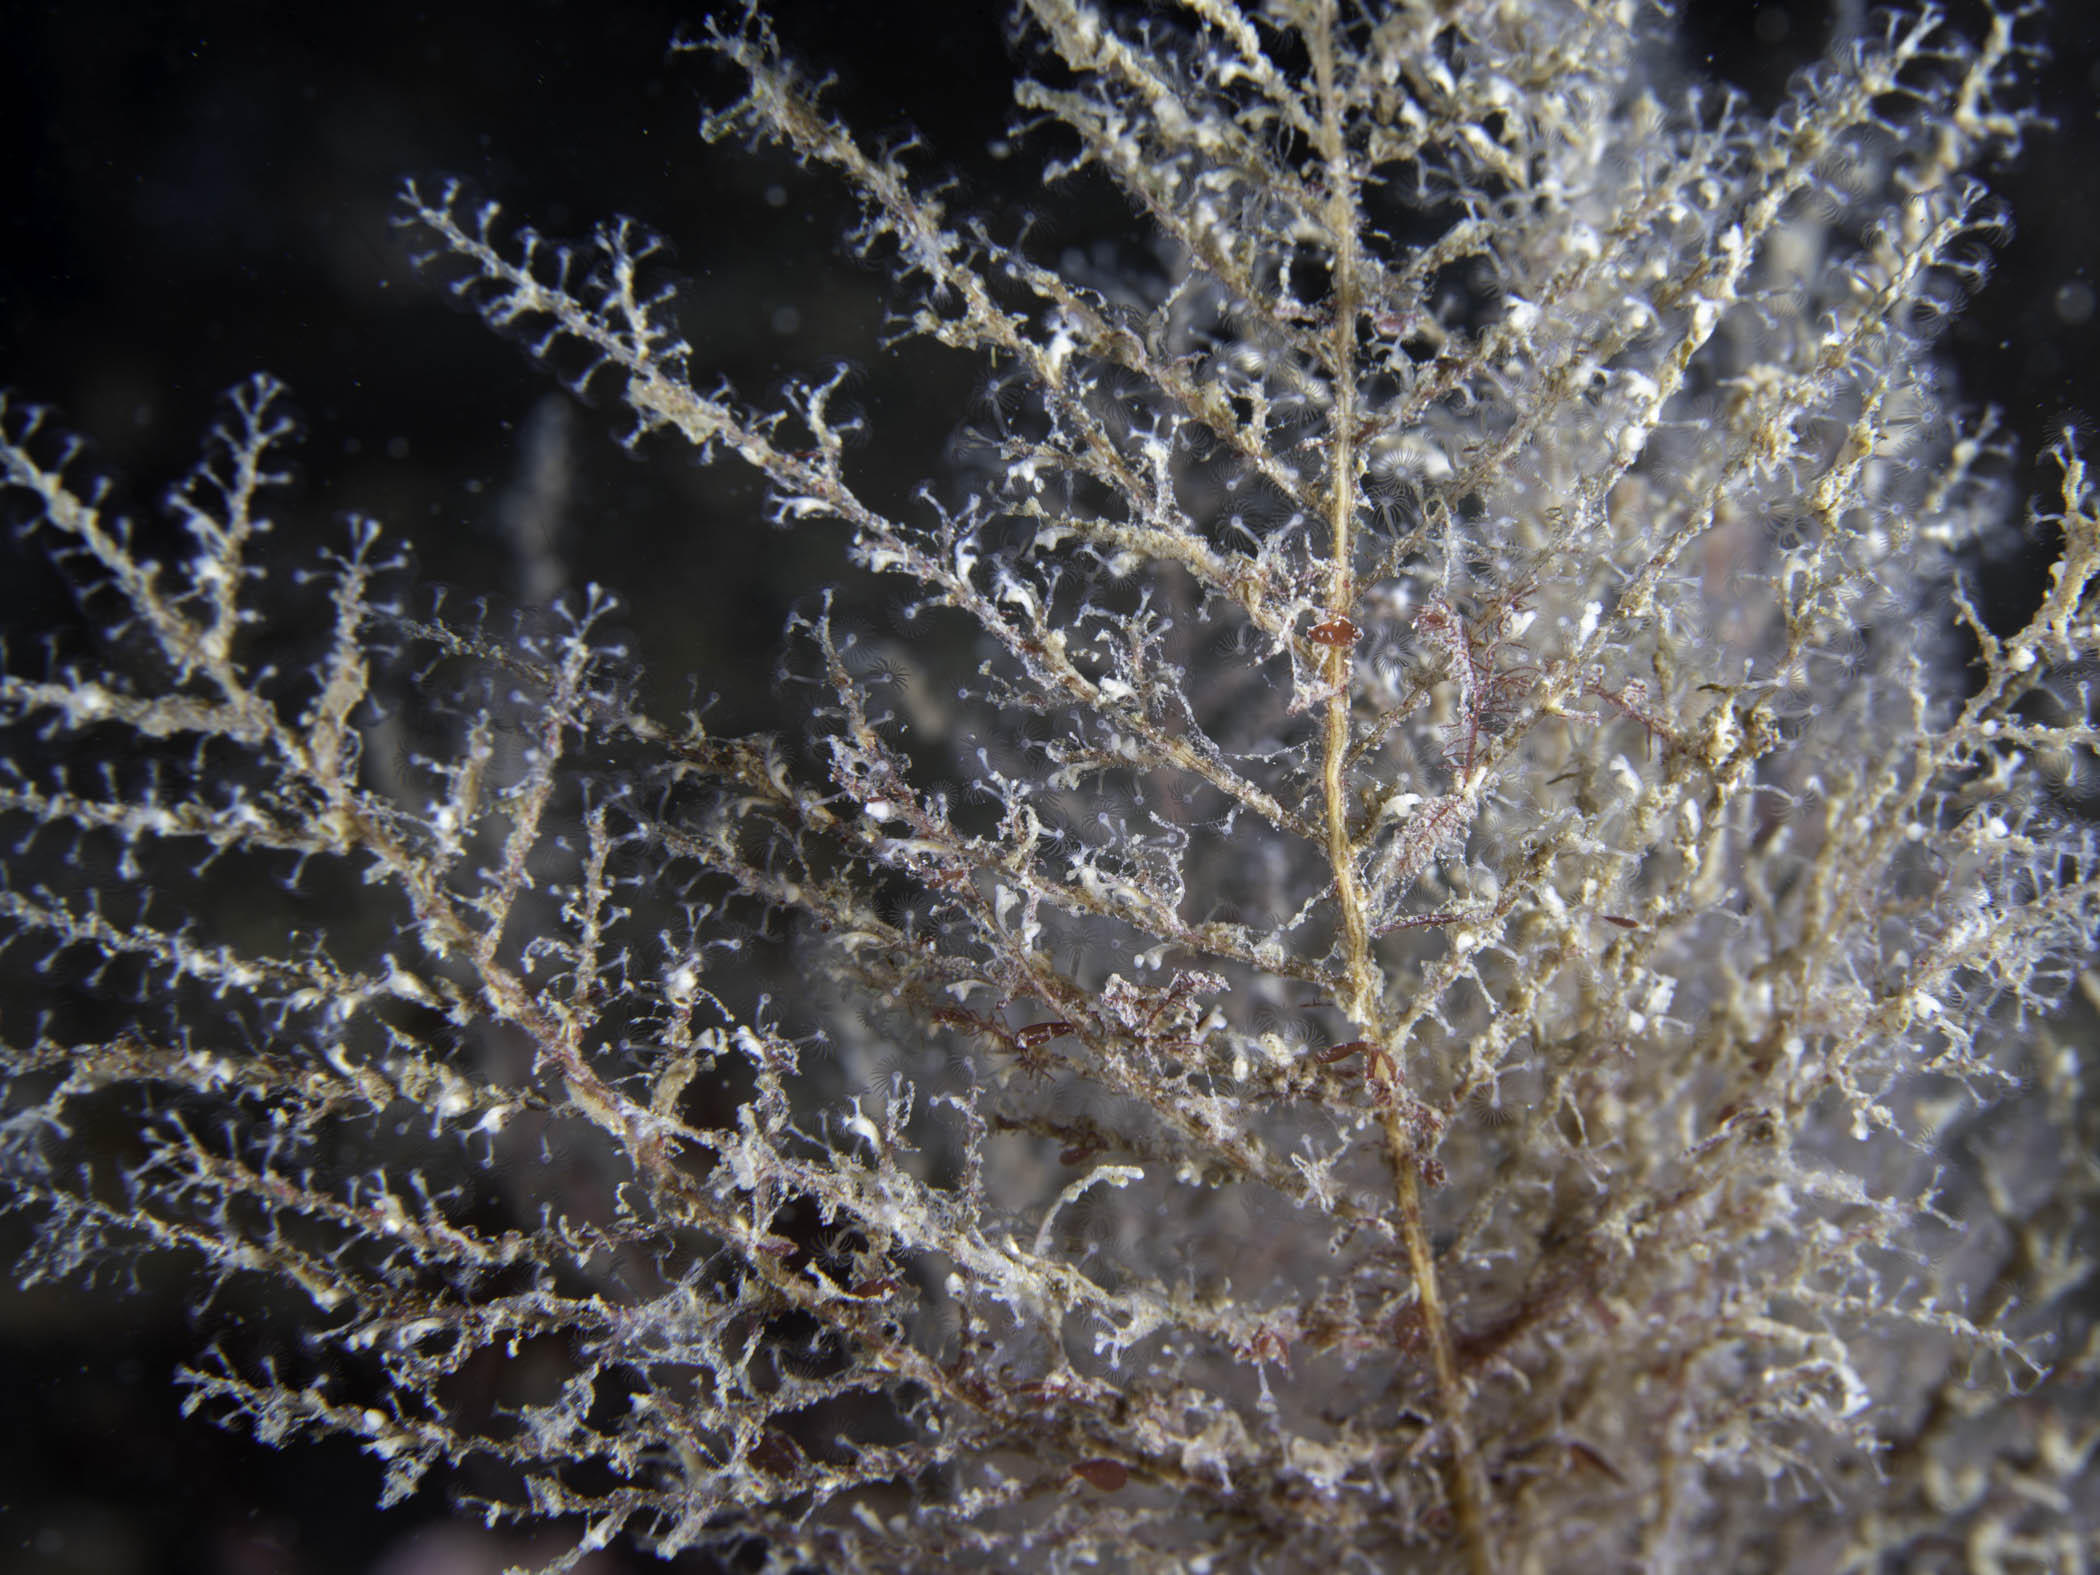 image: Halecium beanii. Strangford Lough, 2018.